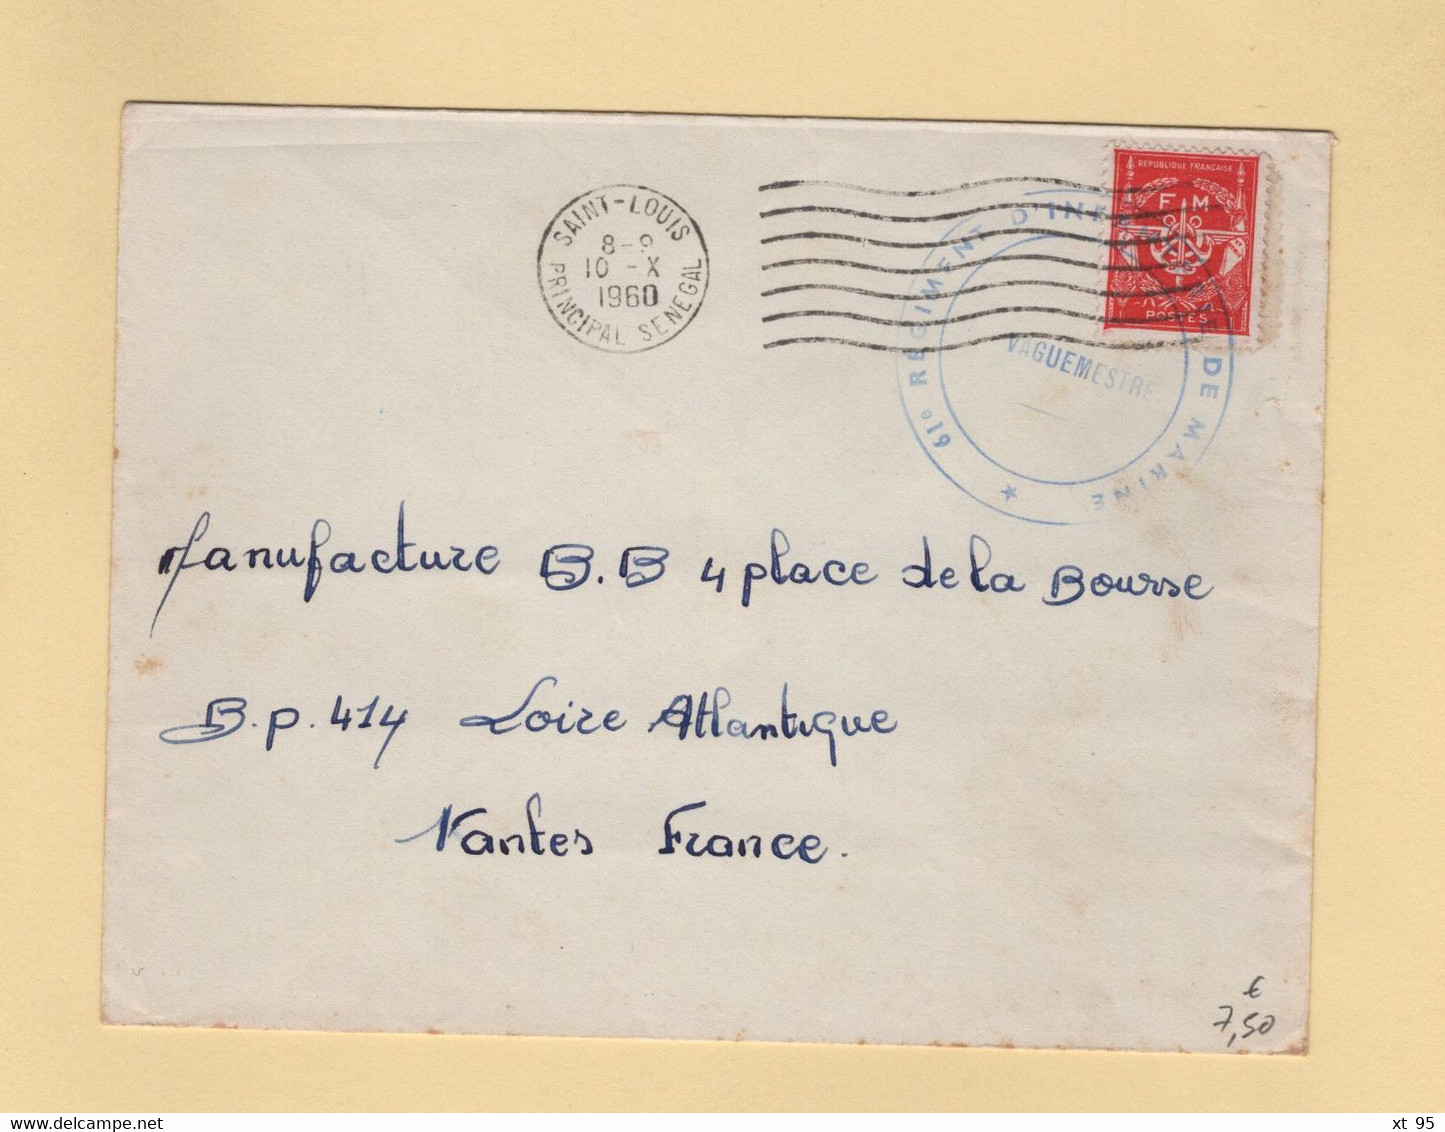 Timbre FM - Saint Louis - Senegal - 1960 - 61e Regiment D Infanterie De Marine - Sellos De Franquicias Militares